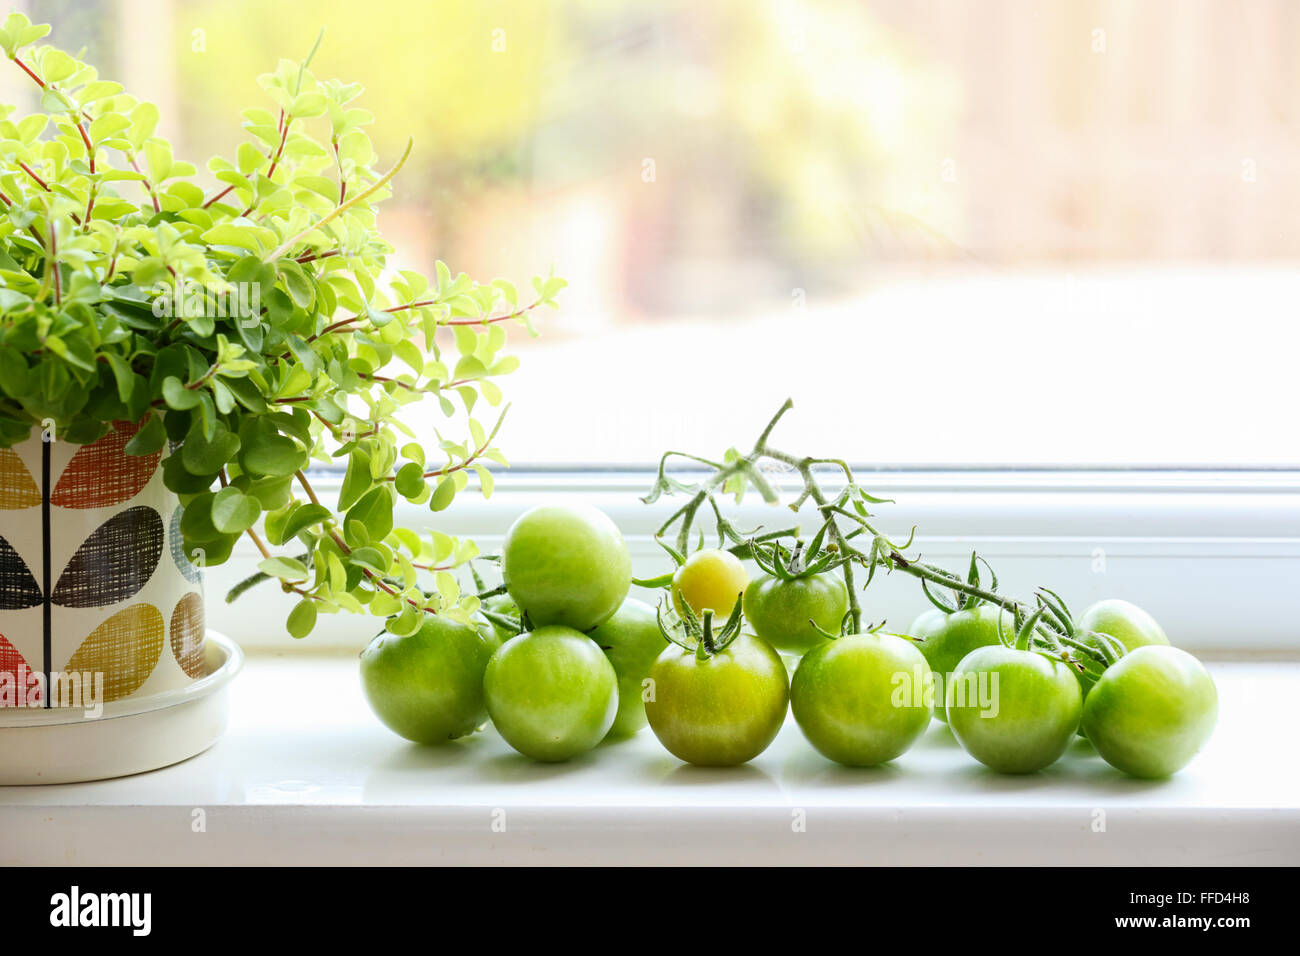 Maison, jardin les tomates qui sont encore vertes,sur leur maturation, vigne sur un rebord de fenêtre de cuisine Banque D'Images